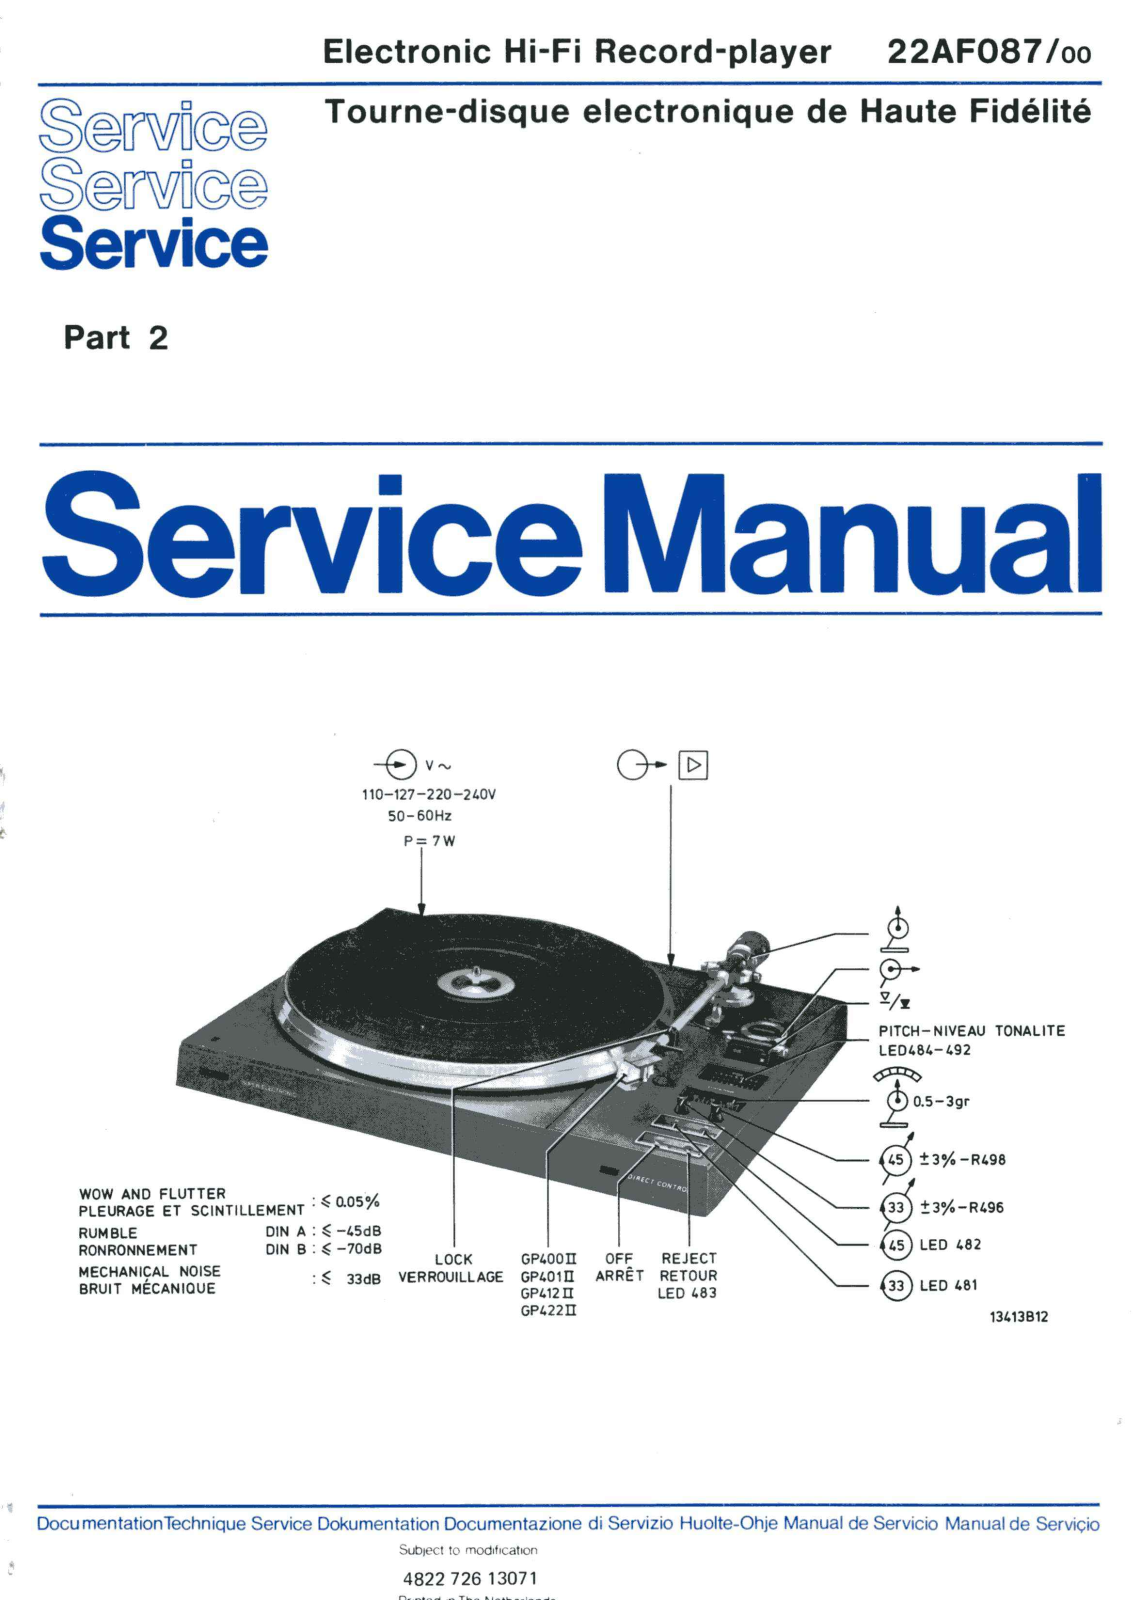 Philips 22-AF-087 Service Manual